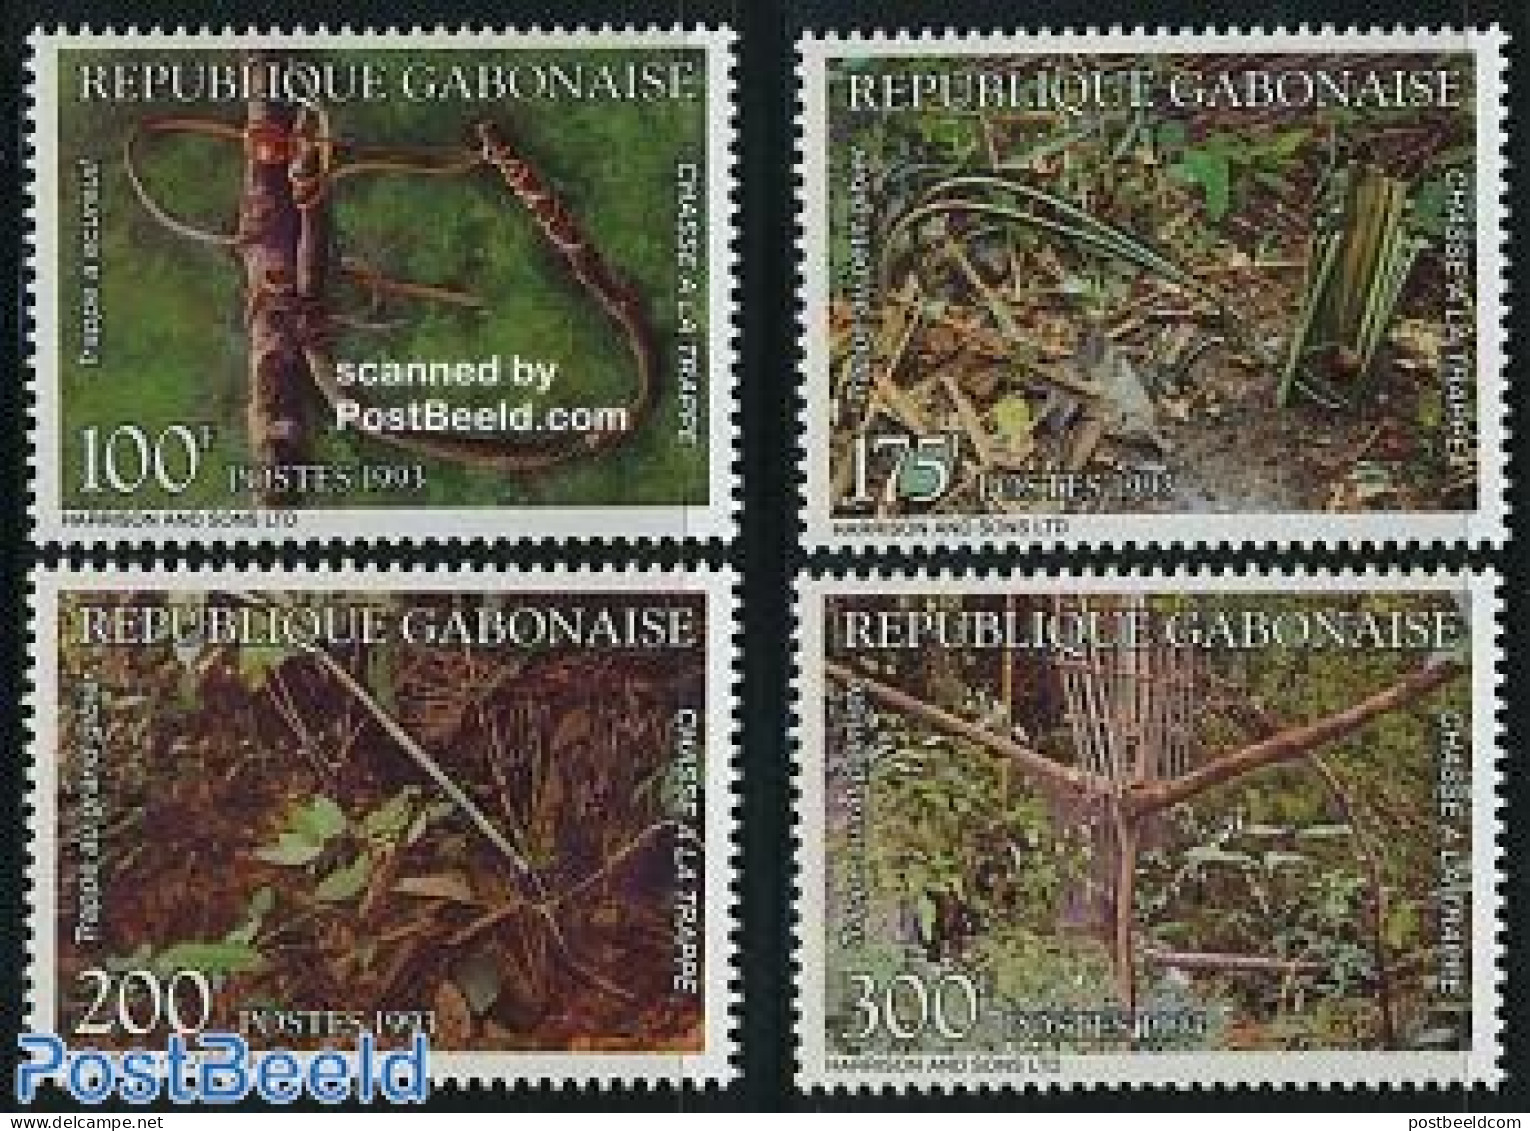 Gabon 1993 Hunting Traps 4v, Mint NH, Nature - Hunting - Neufs